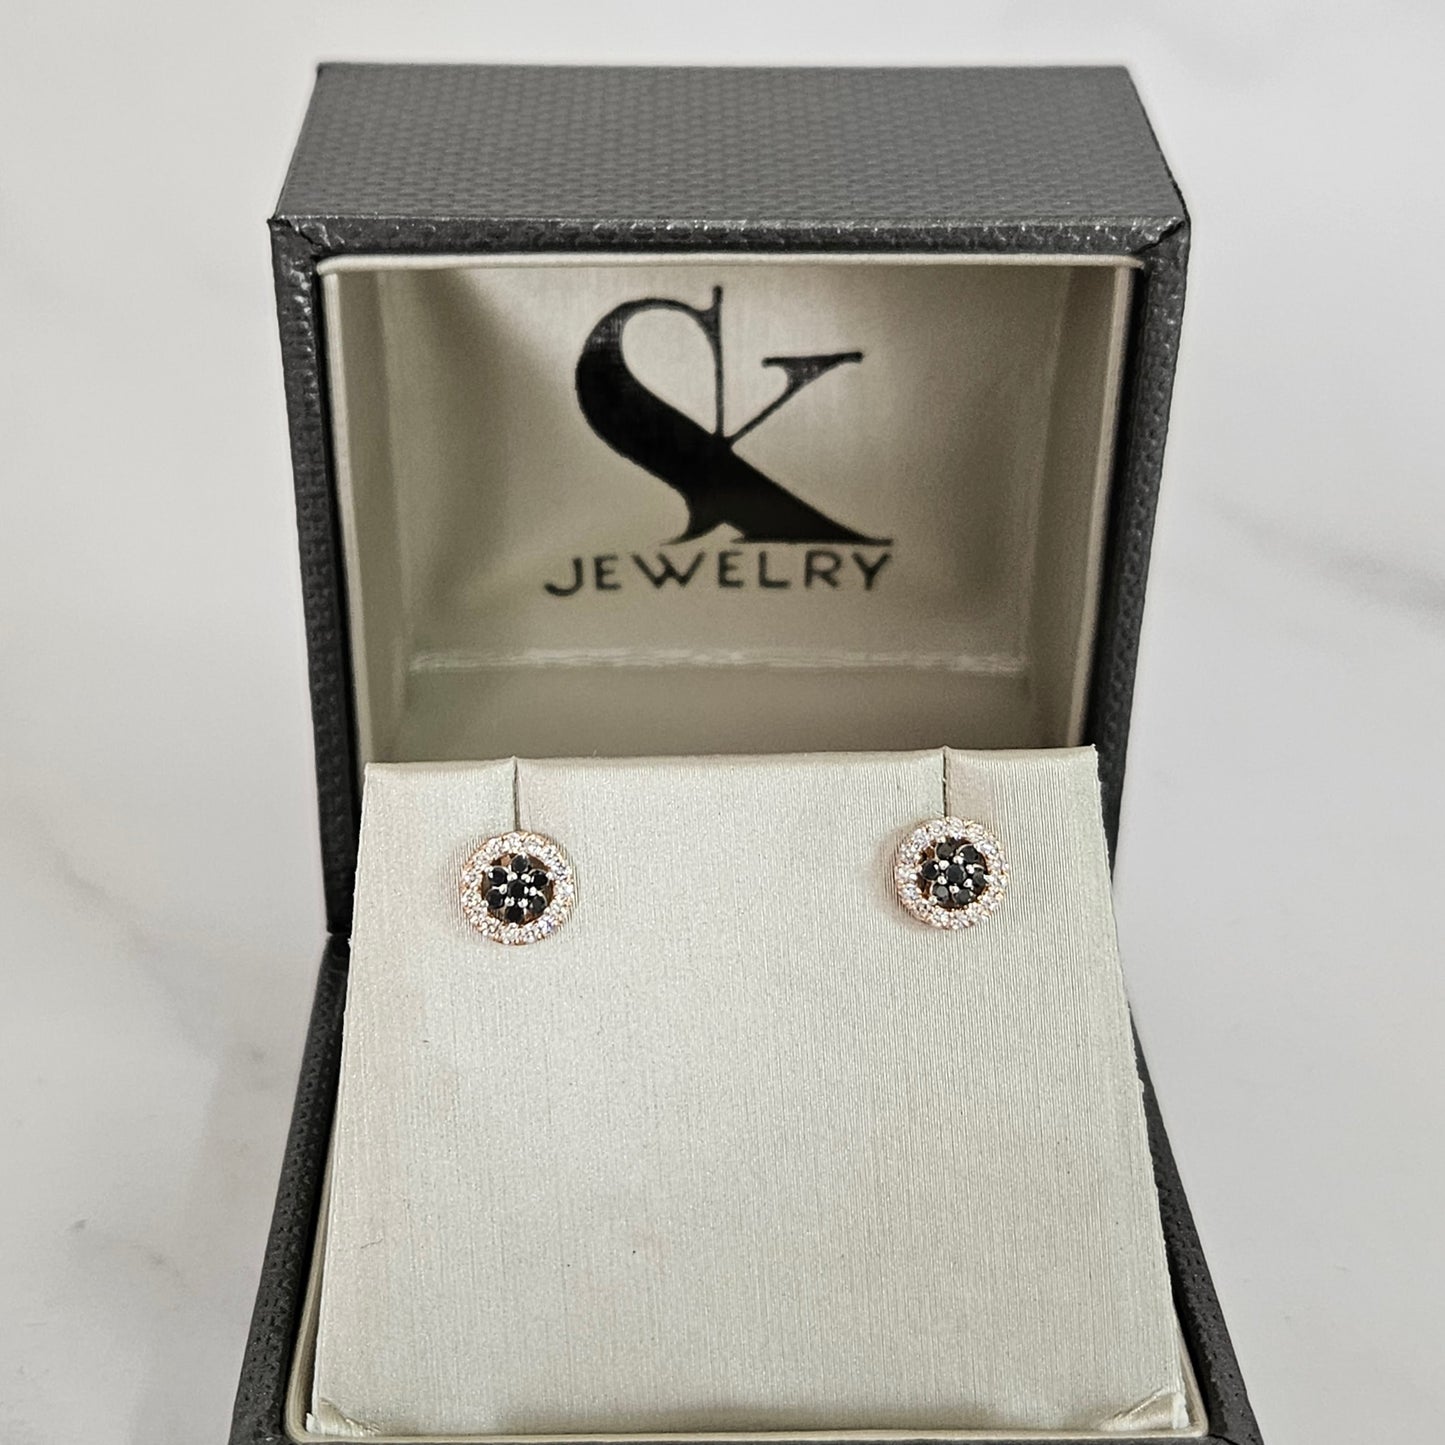 Black & White Diamond Flower Earrings / Natural Diamond Earrings / Stud Flower Earrings / 14k gold Diamond Earrings / Pair / Gifts for Her